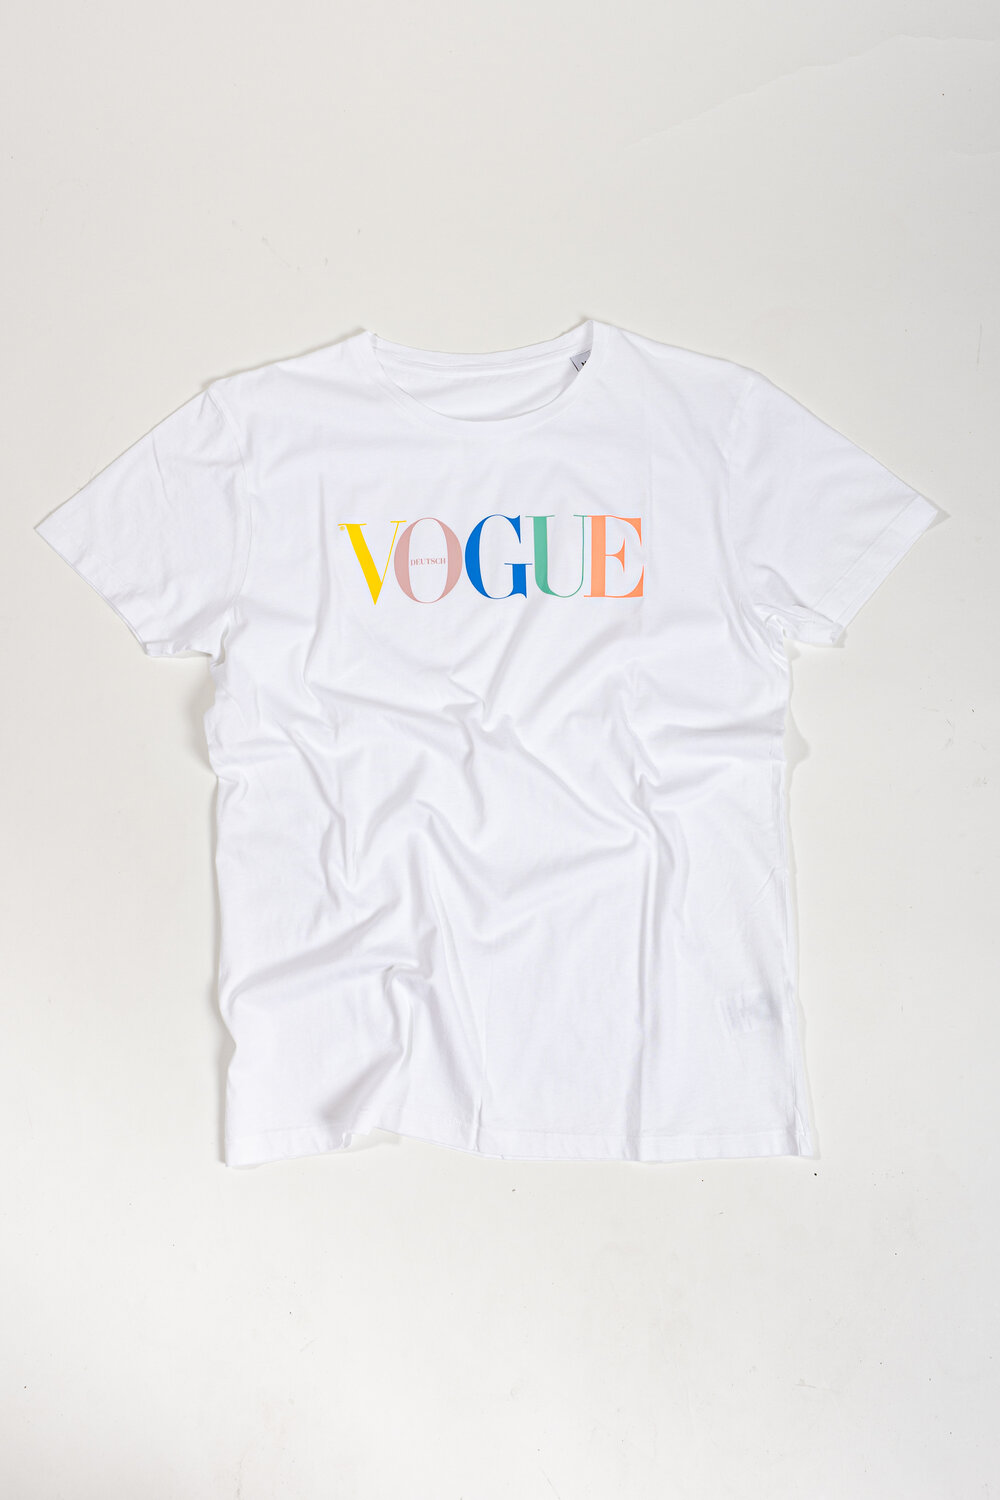 VOGUE T-Shirt bunt M